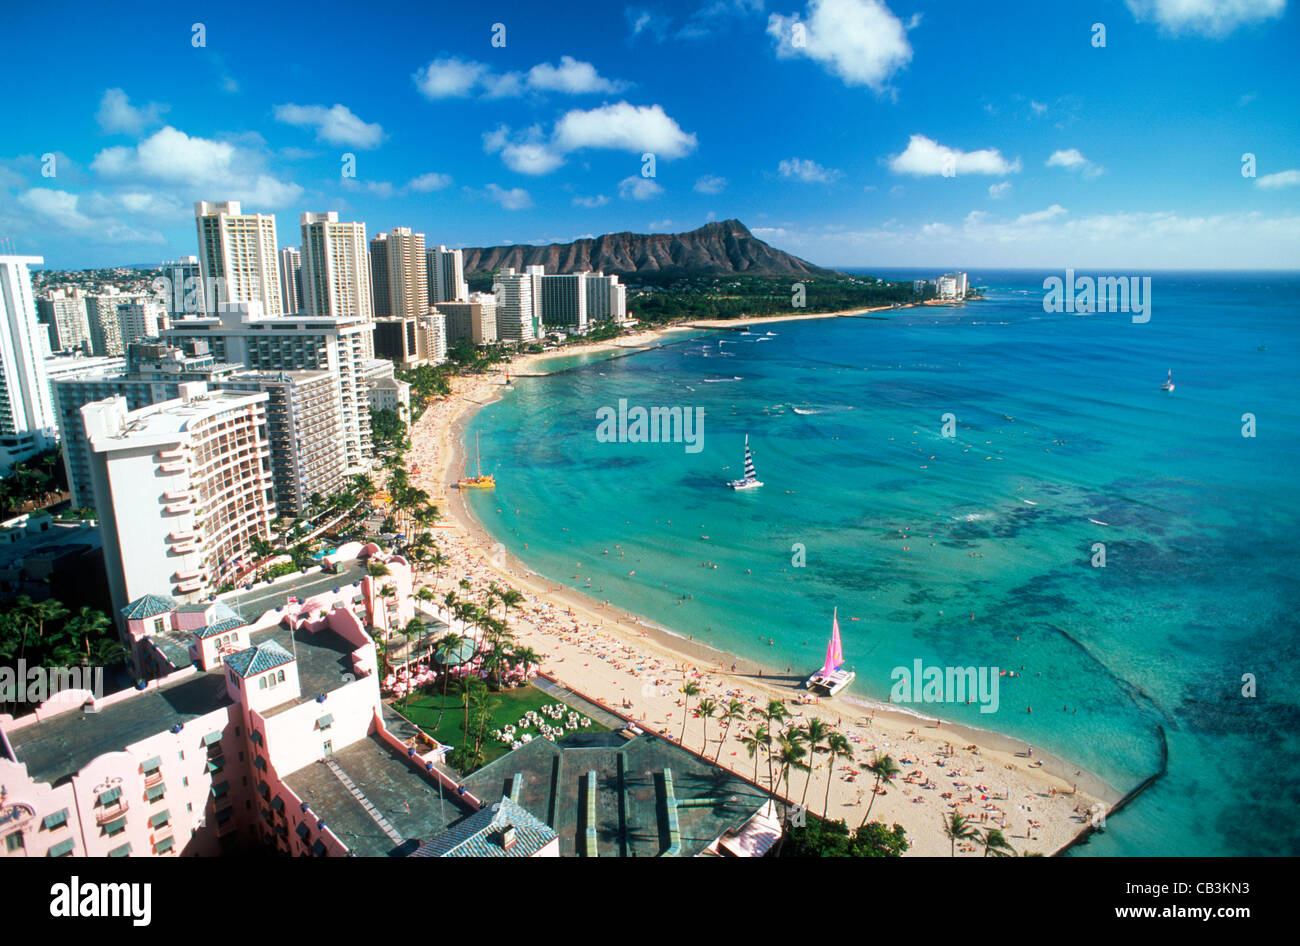 La plage de Waikiki et Diamond Head en face de la plage avec des hôtels et les catamarans sur l'île d'Oahu à Hawaii Banque D'Images